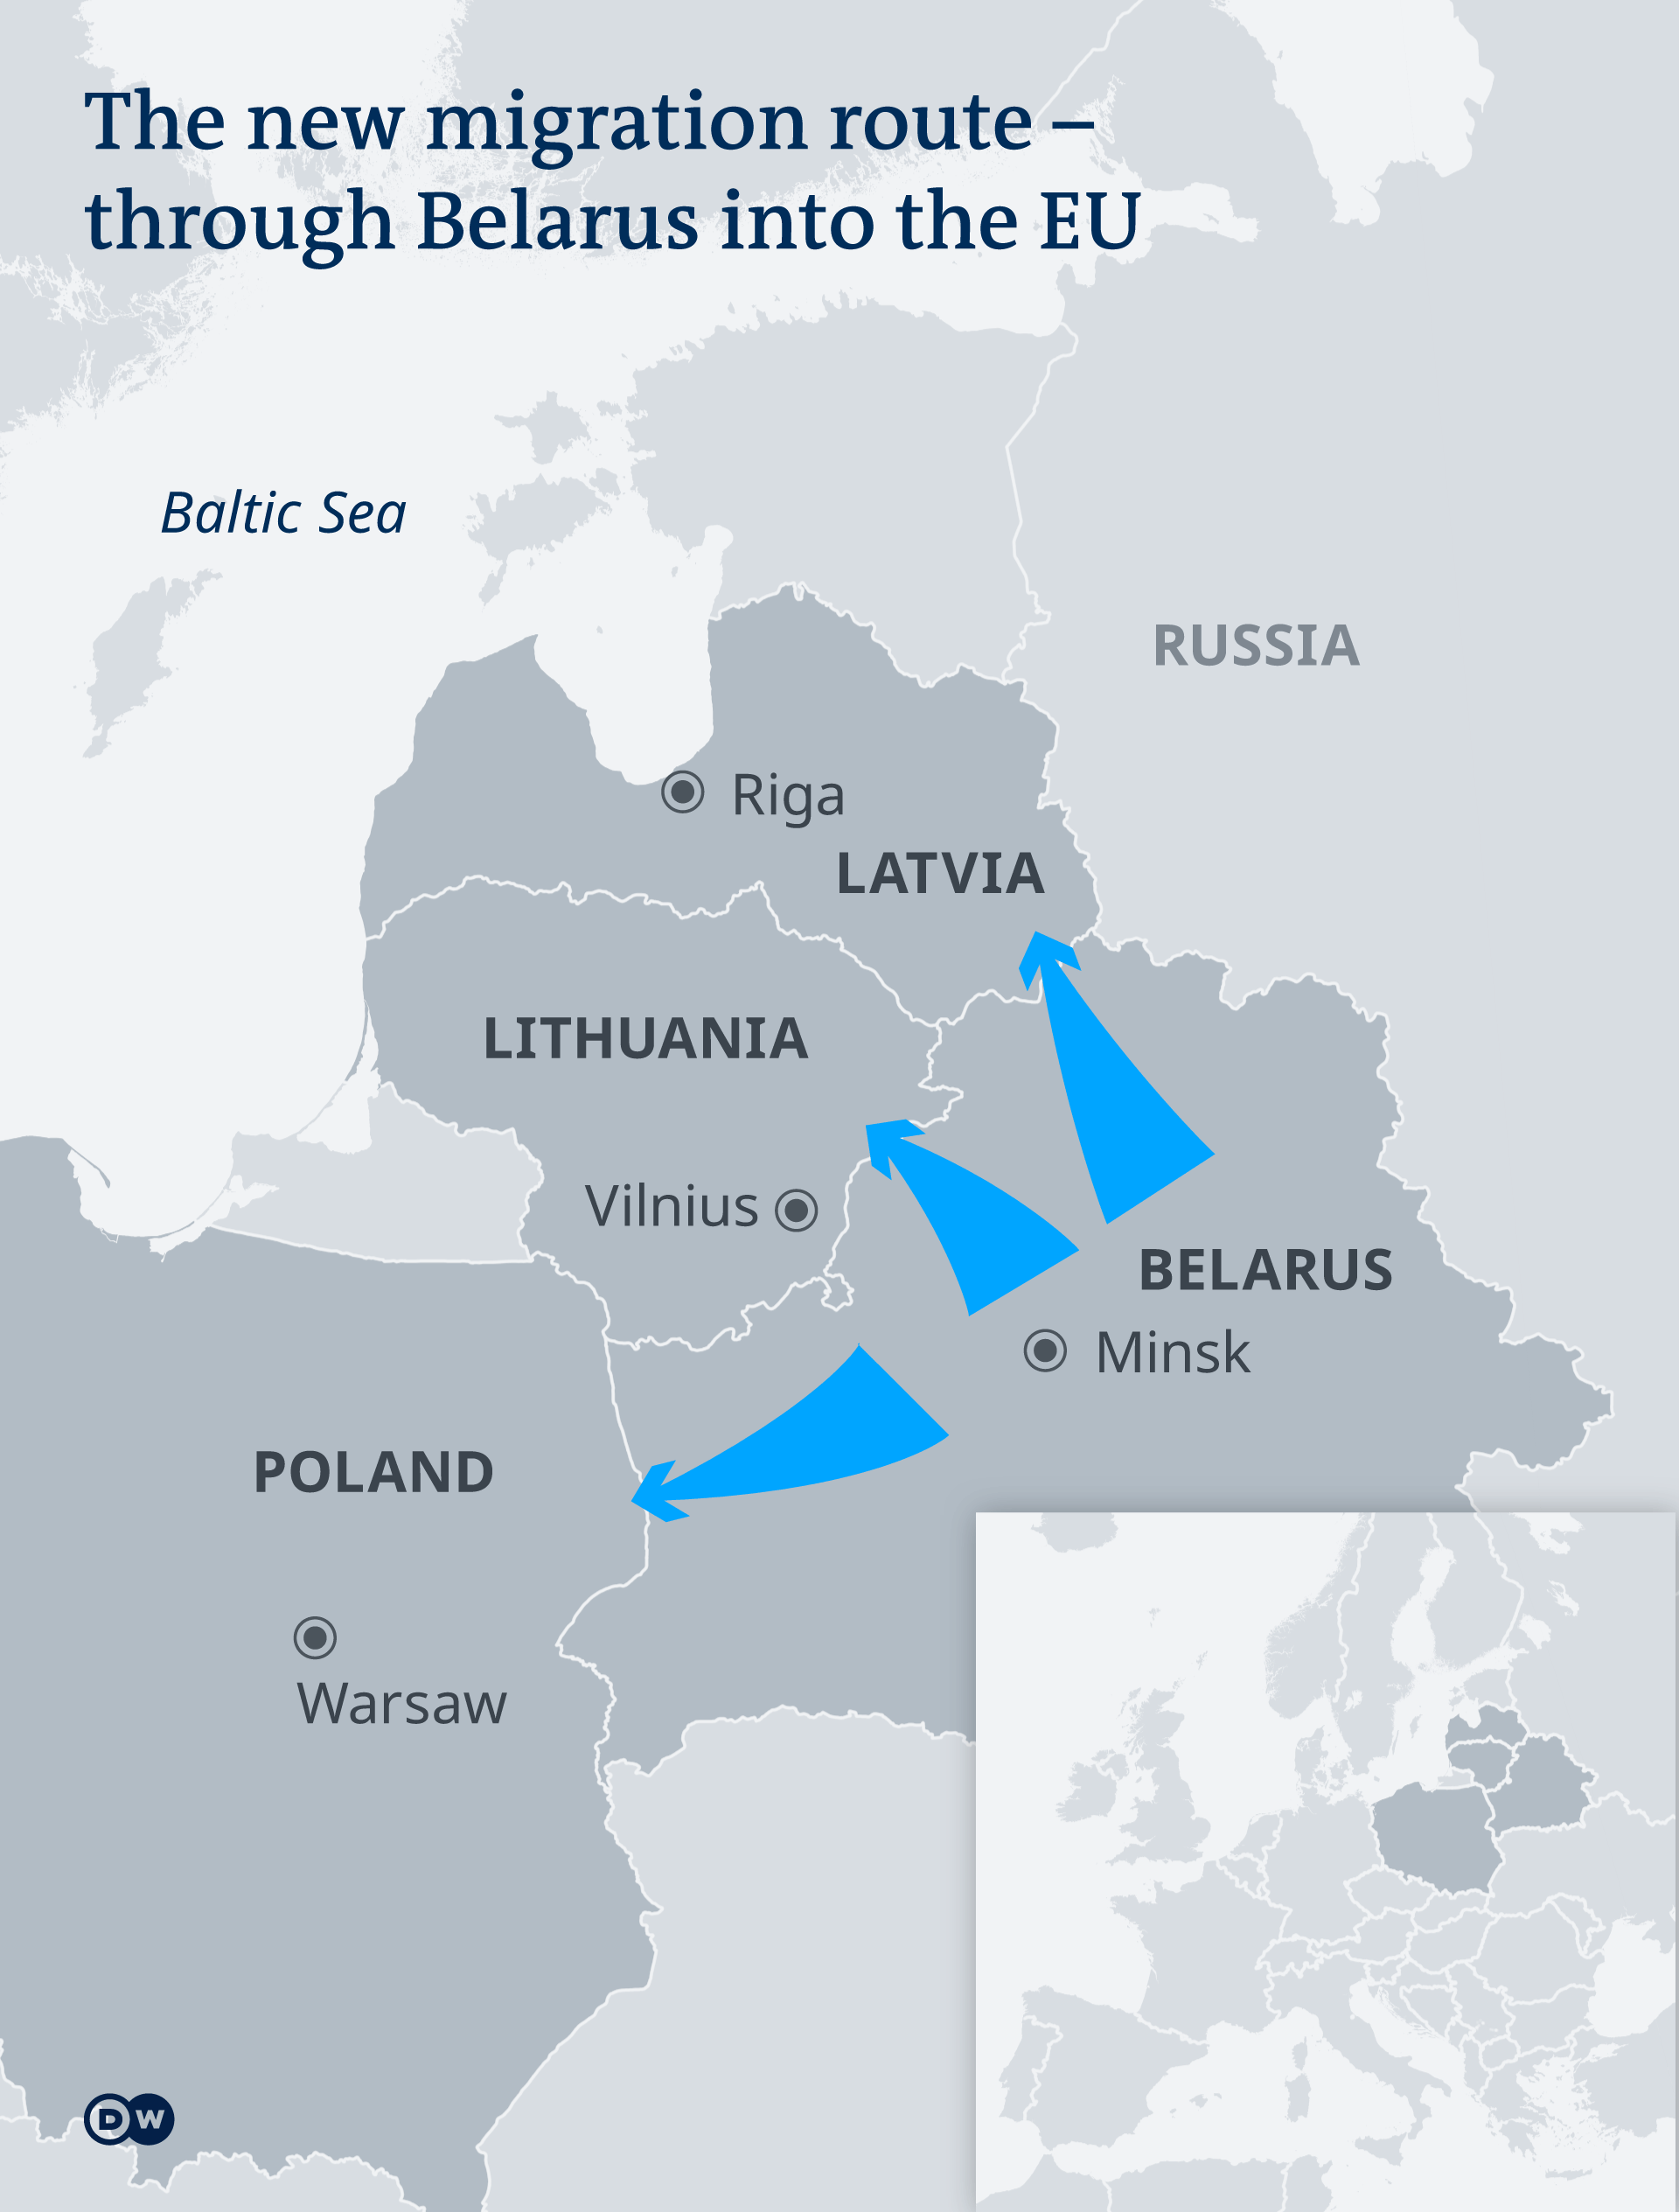 Rute migran dari Belarus ke Uni Eropa